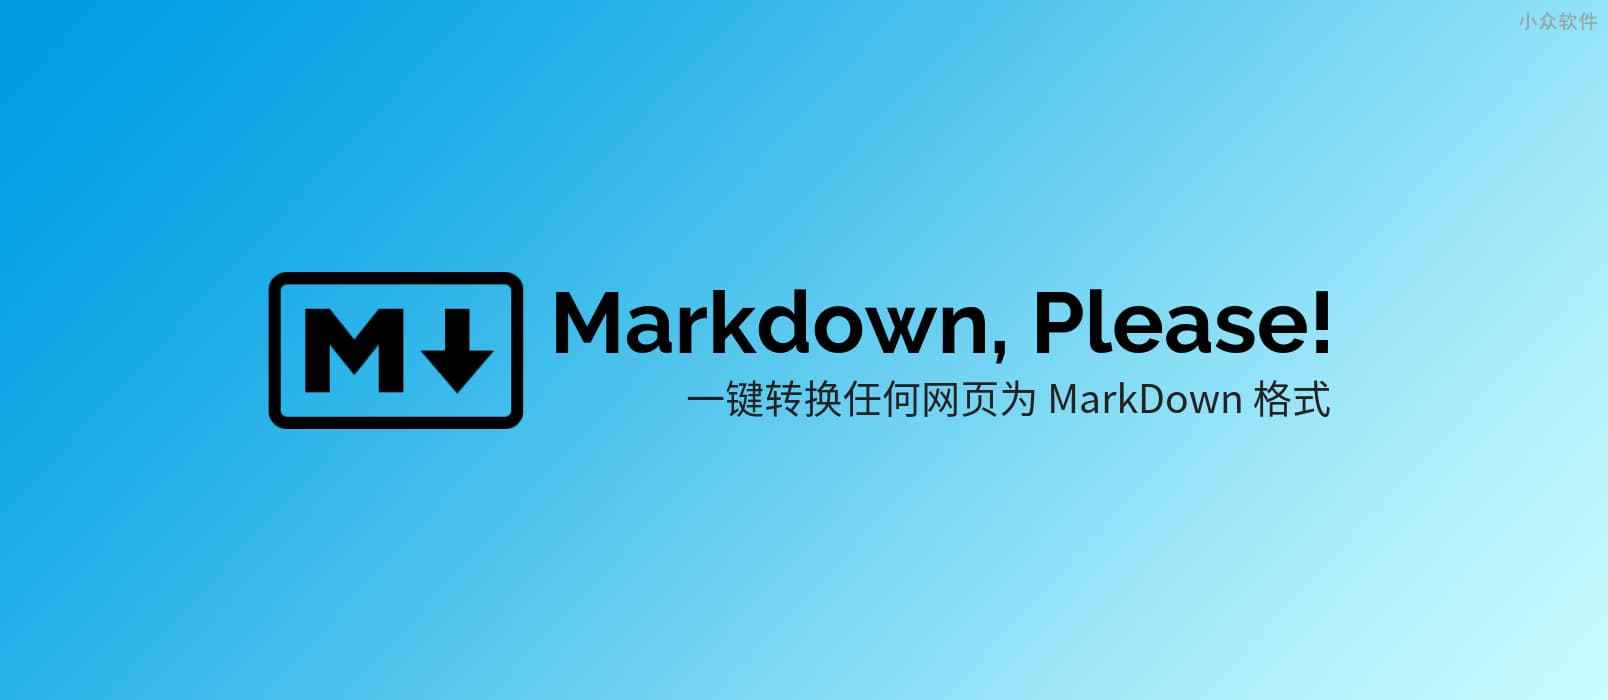 Markdown, Please! 将任意网页转换为 MarkDown 格式